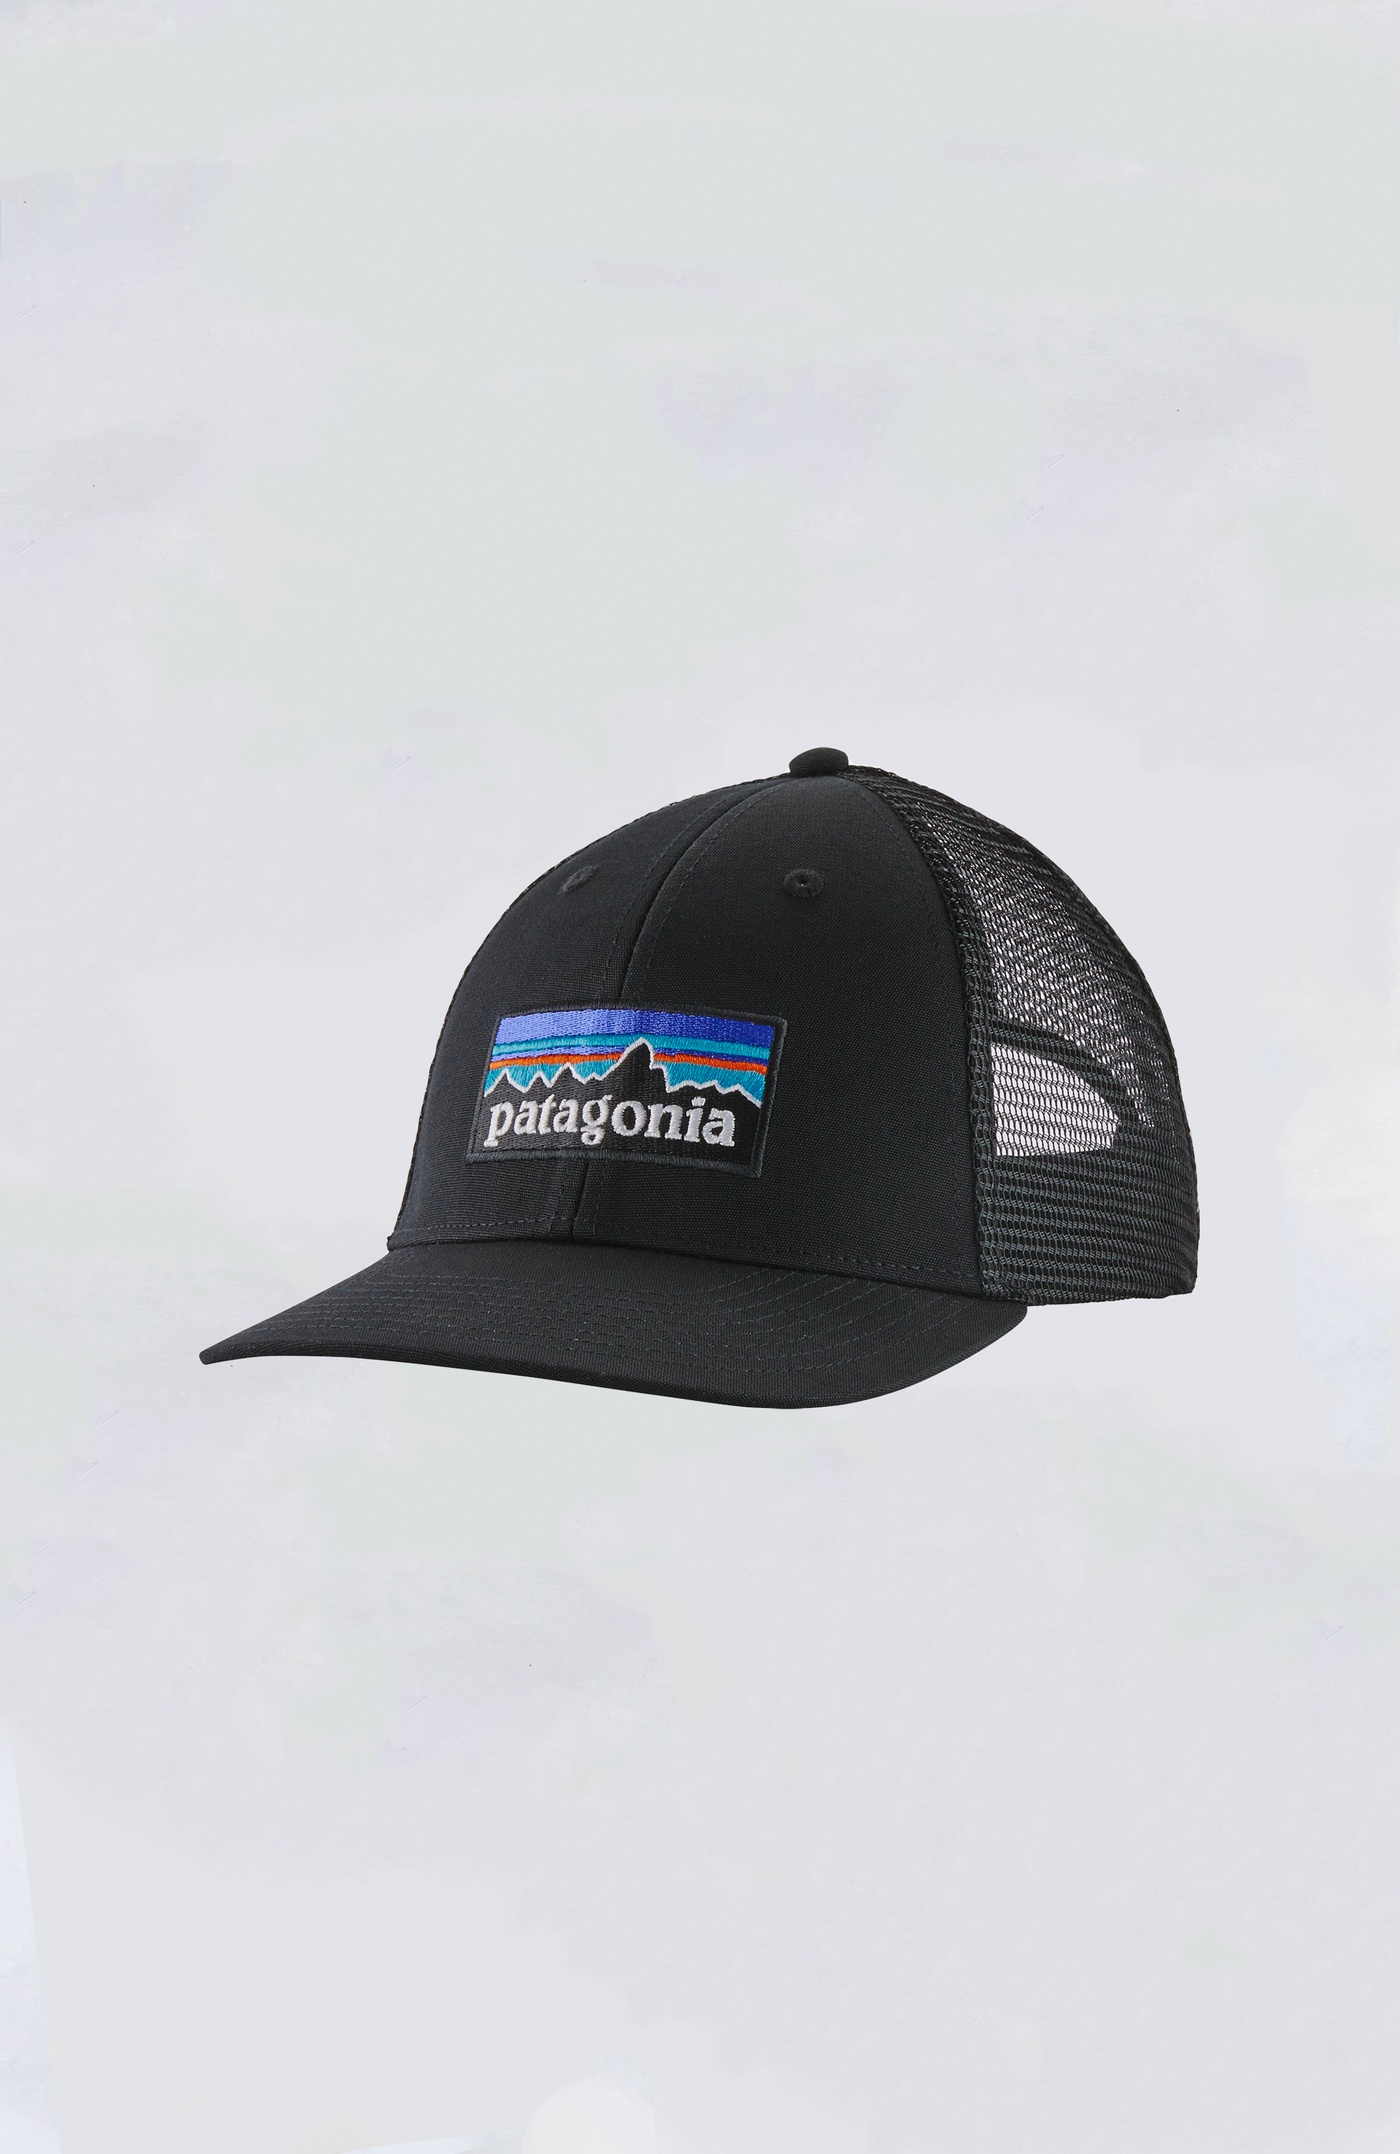 Patagonia Line Logo Ridge LoPro Trucker Hat  Trucker hat, Patagonia hat, Patagonia  hat men